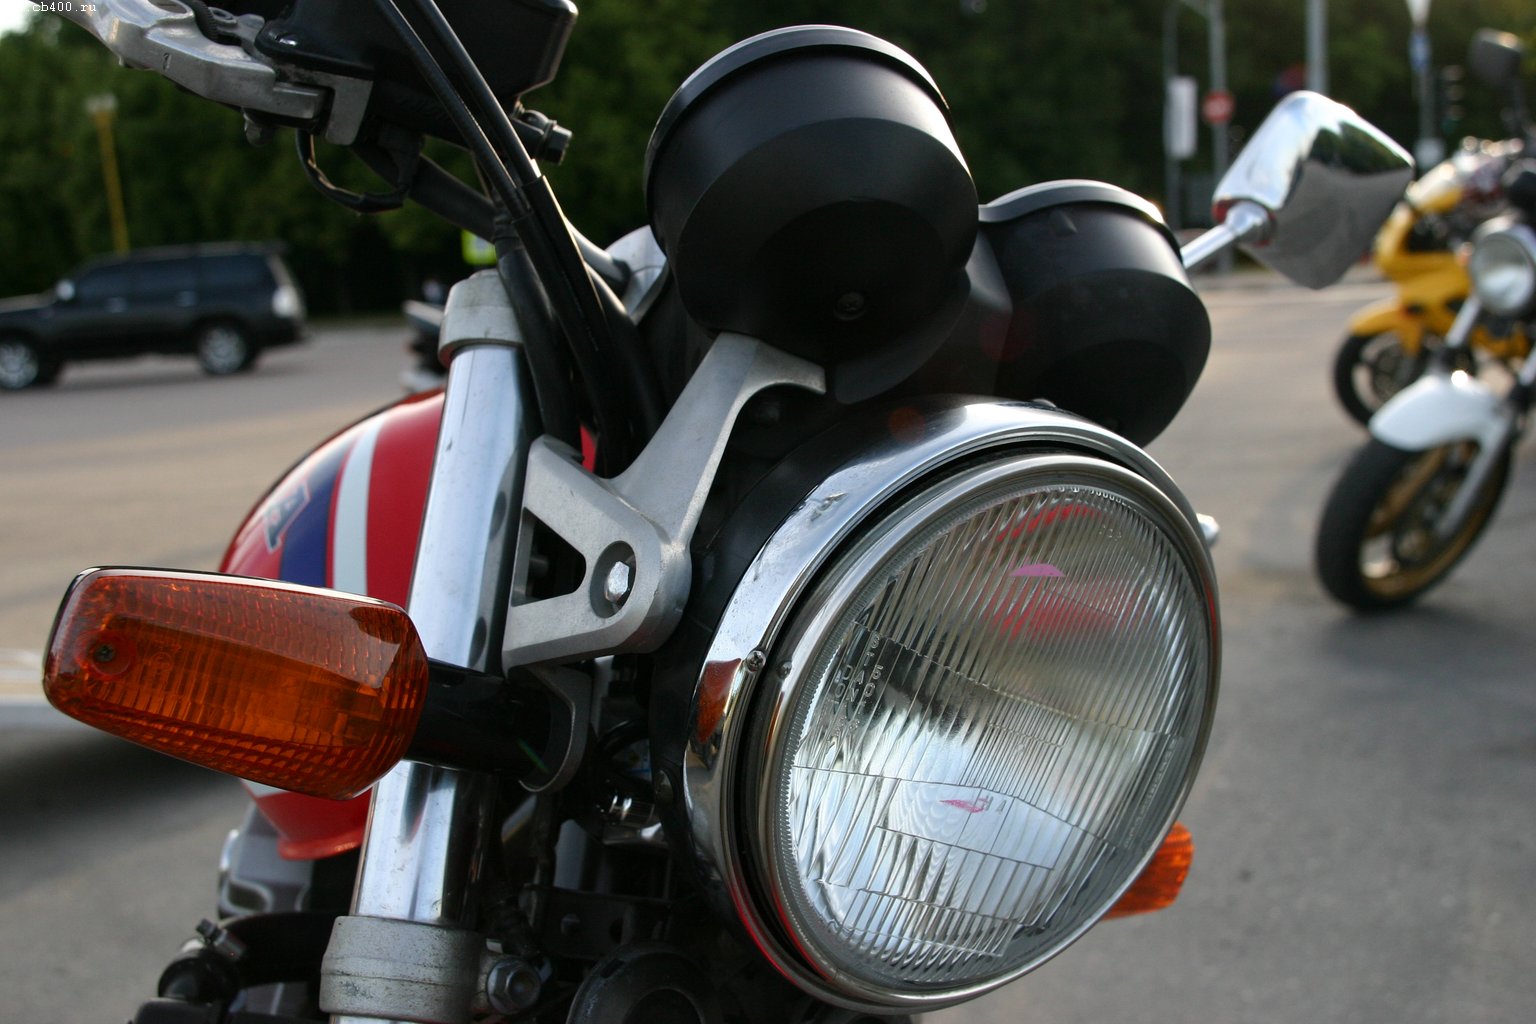 Honda CB 400 тюнинг и полезные советы для доработки